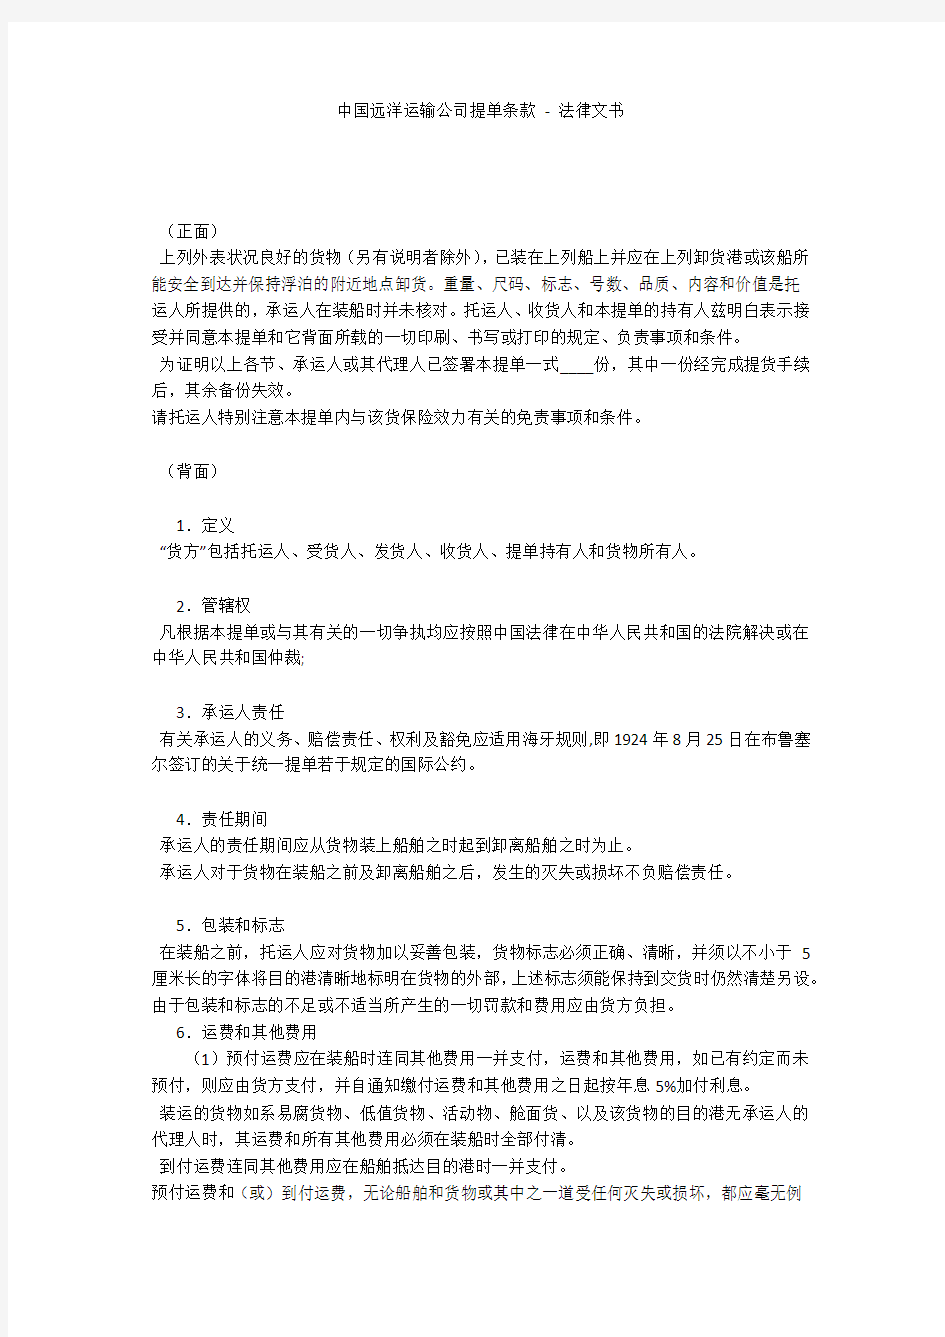 中国远洋运输公司提单条款 - 法律文书 